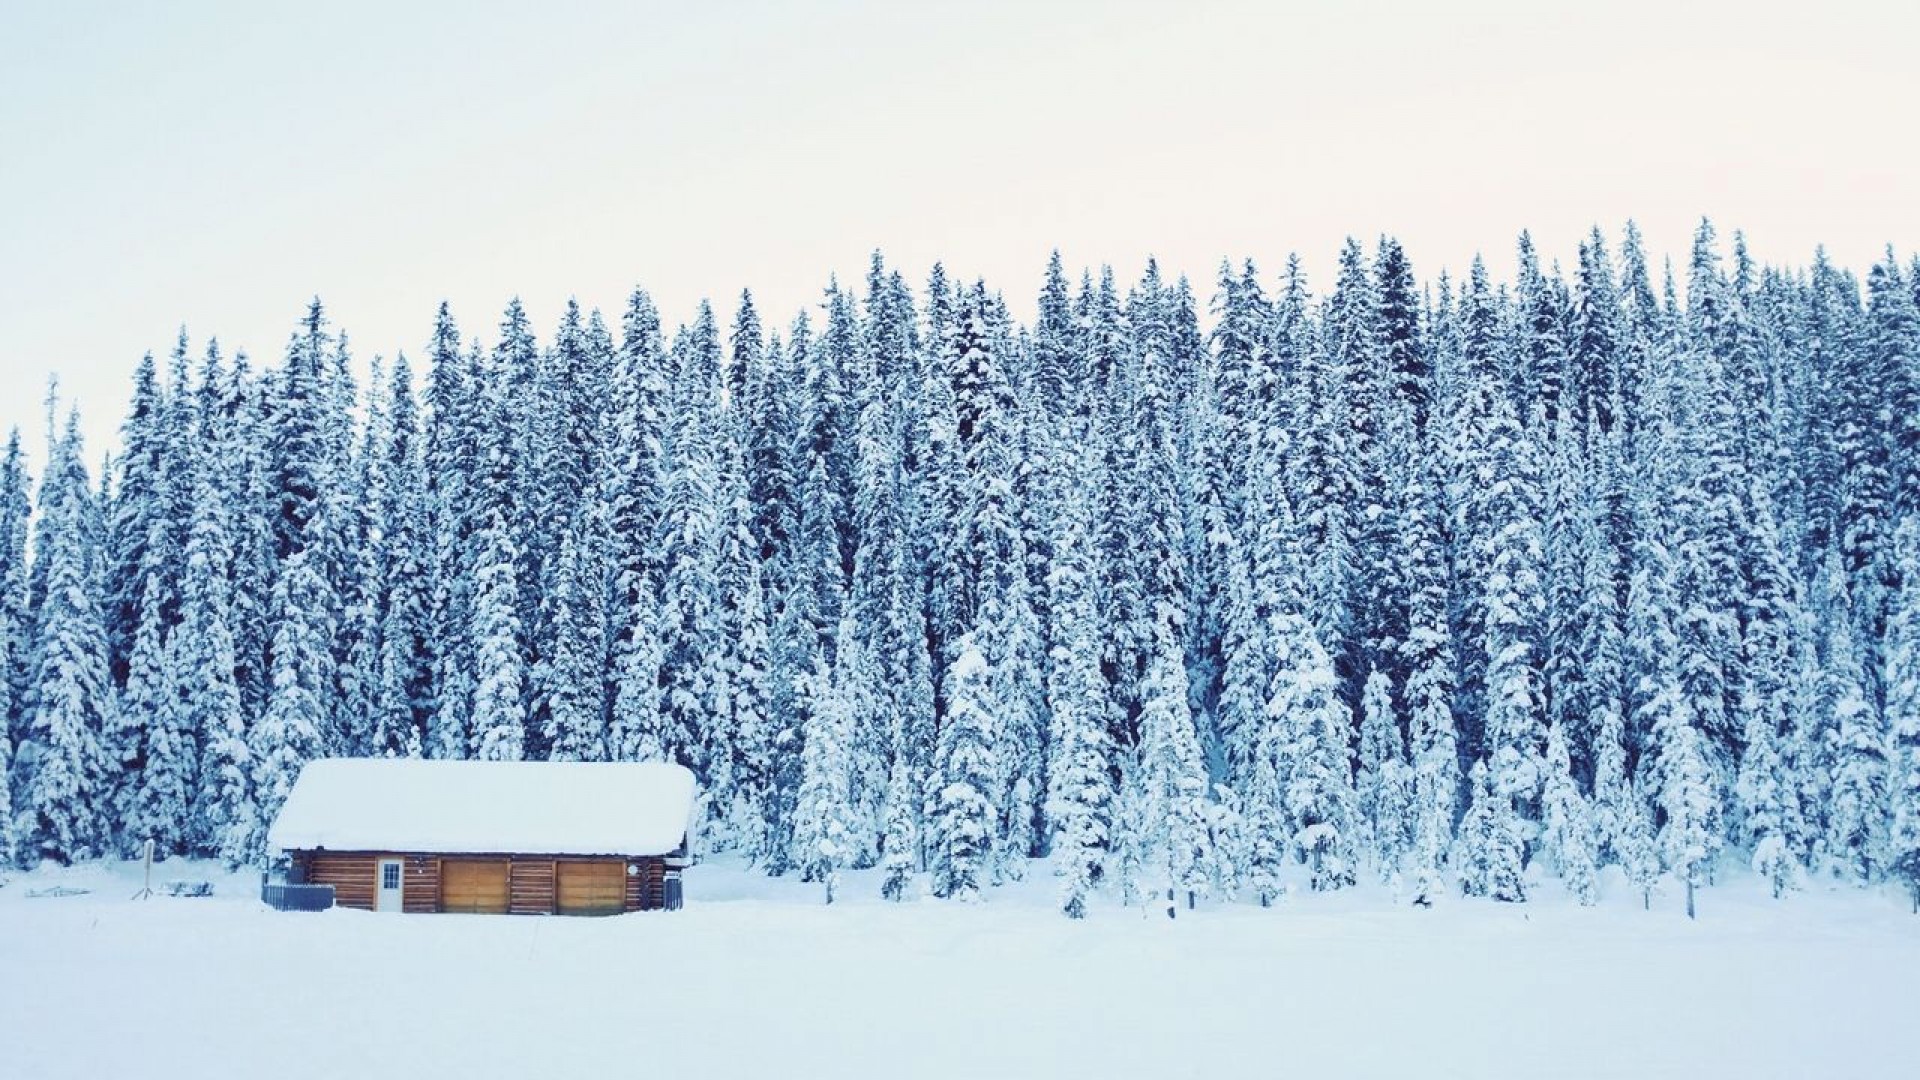 Chia sẻ kinh nghiệm du học Canada: Trải nghiệm mùa đông có một không hai